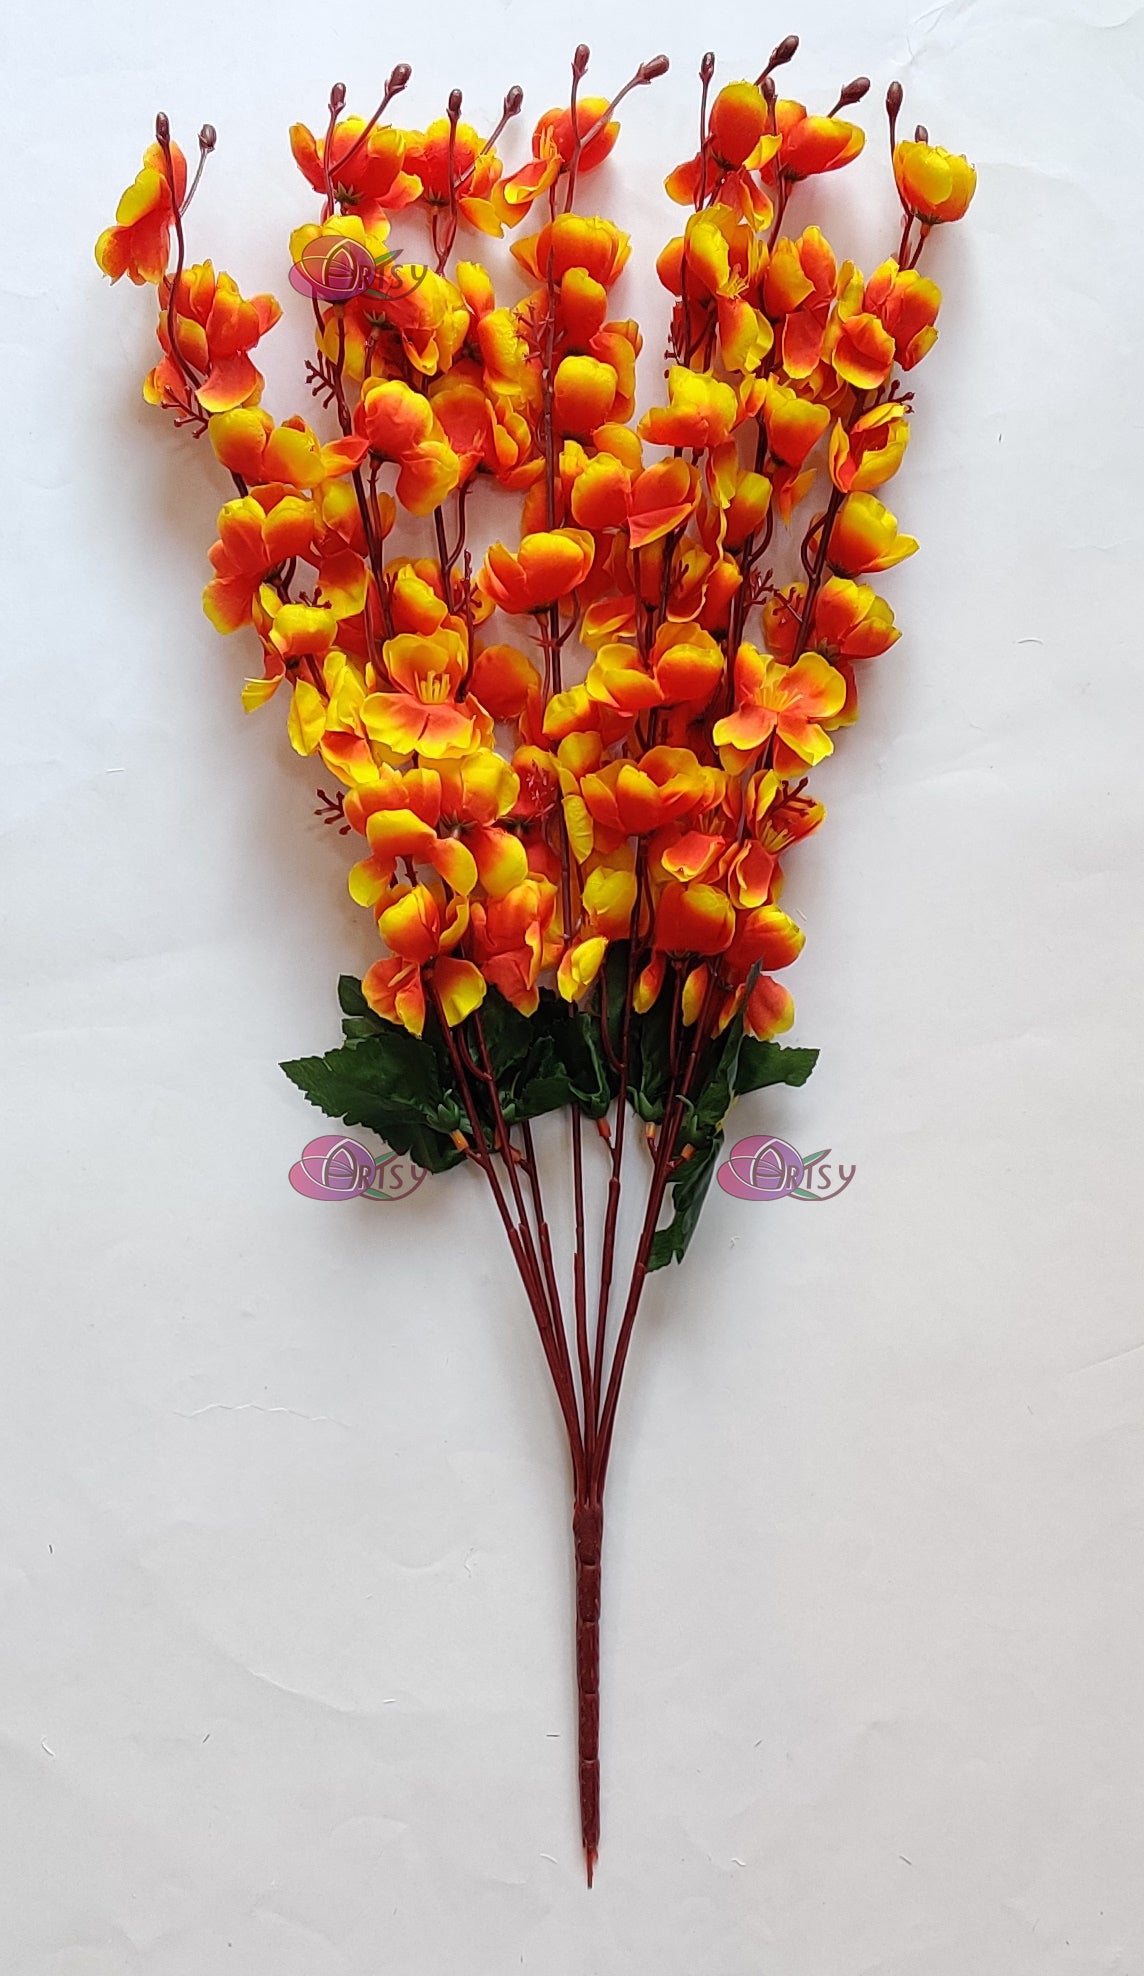 ARTSY® Lively Orange Artificial Cherry Blossom Flower Bunch - Radiant Floral Elegance For Home Decoration, Office Decor, Vase Filler, Without Vase, 55 Cm Long